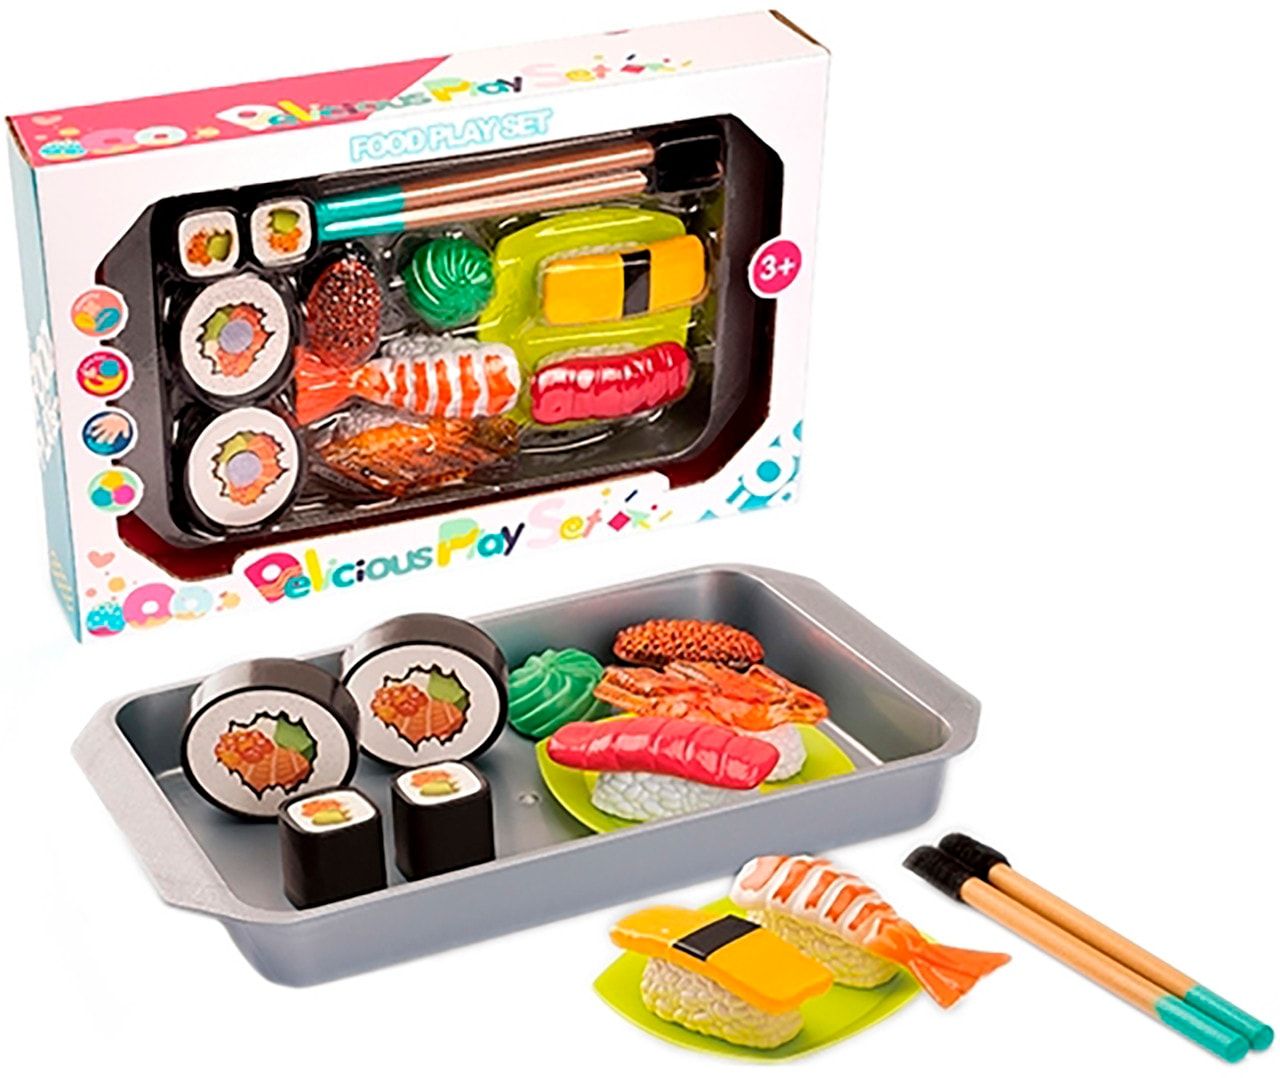 Заказать набор суши с доставкой в спб фото 115